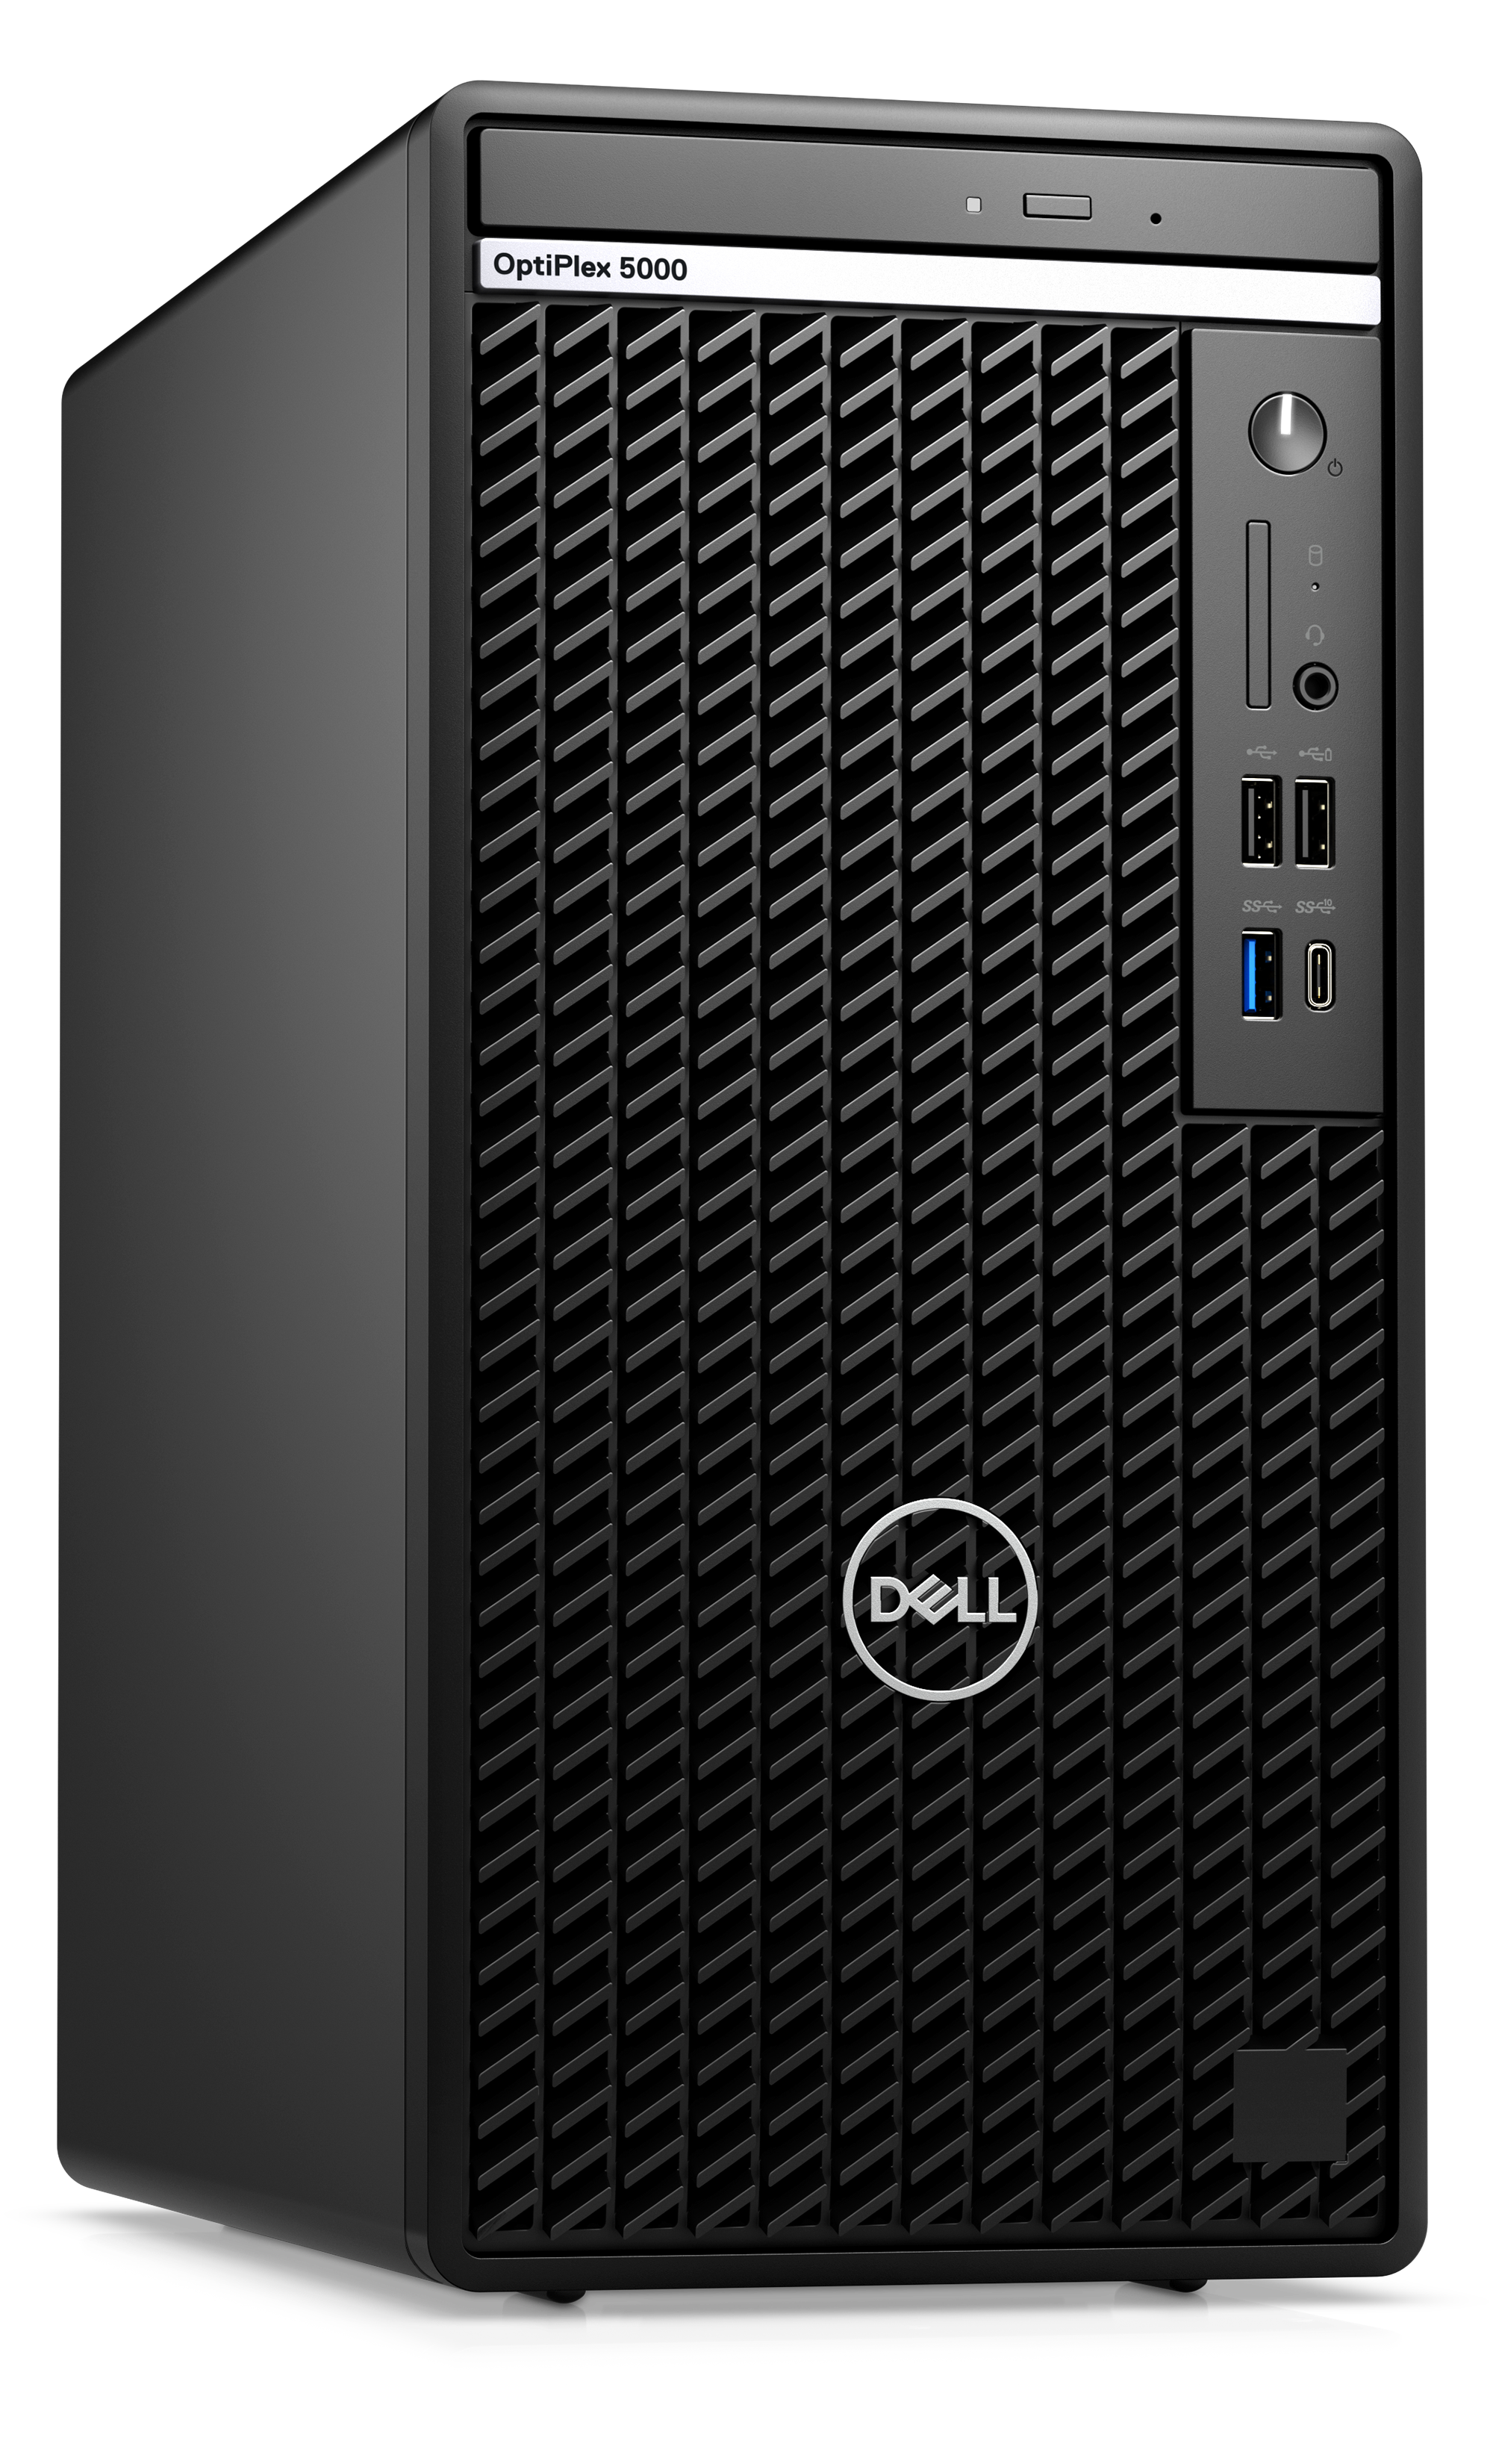 Dell Optiplex 5000MT 12th Generation Intel Core i5-12500